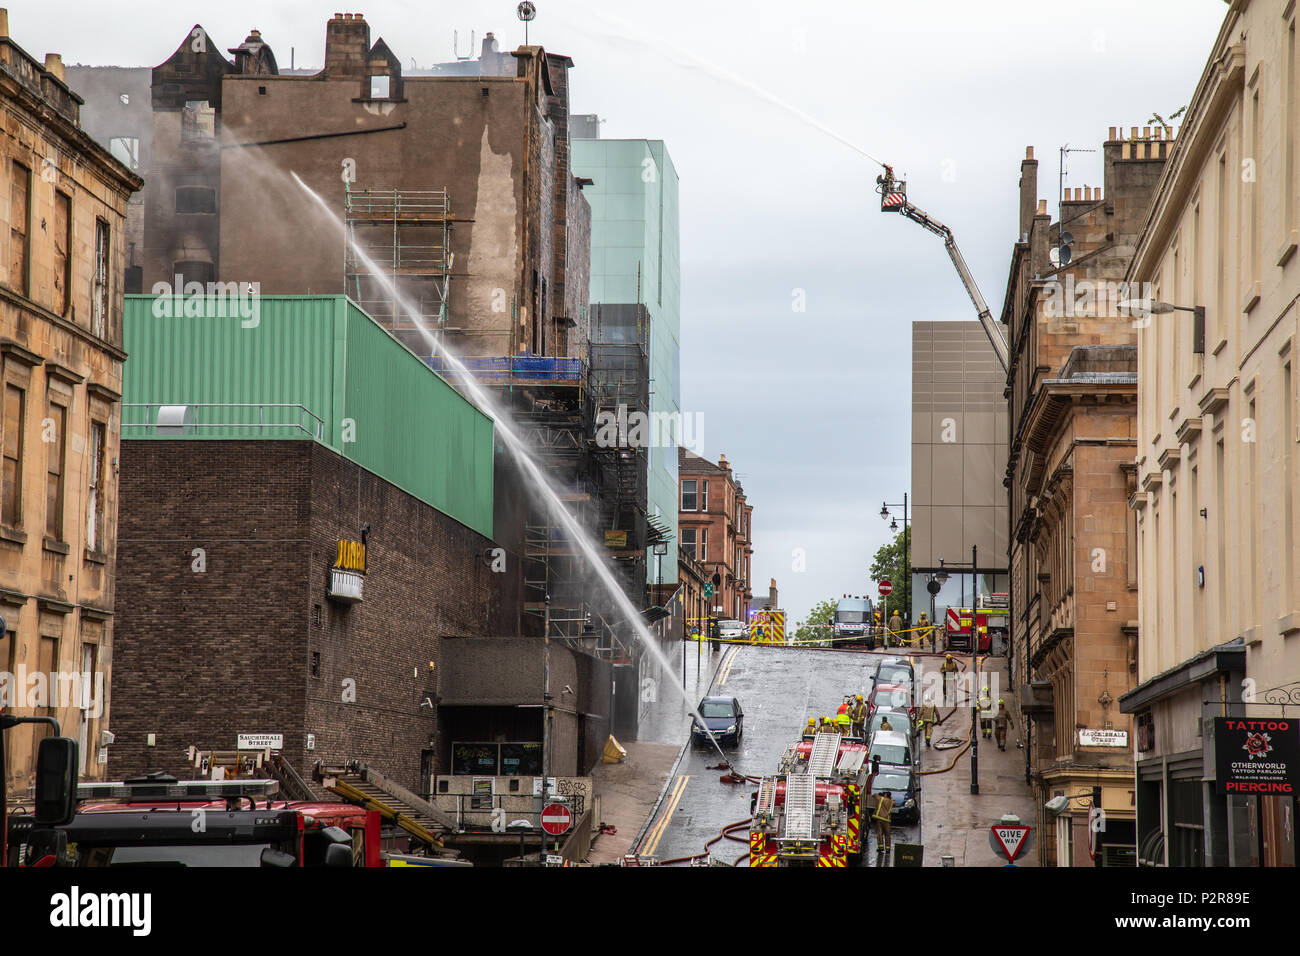 Incendio che devastò la Glasgow School of Art per la seconda volta il 15 giugno 2018. La mattina seguente i vigili del fuoco erano ancora lo spegnimento della blaze che la diffusione di O2 Academy music venue e il Campus night club. Foto Stock